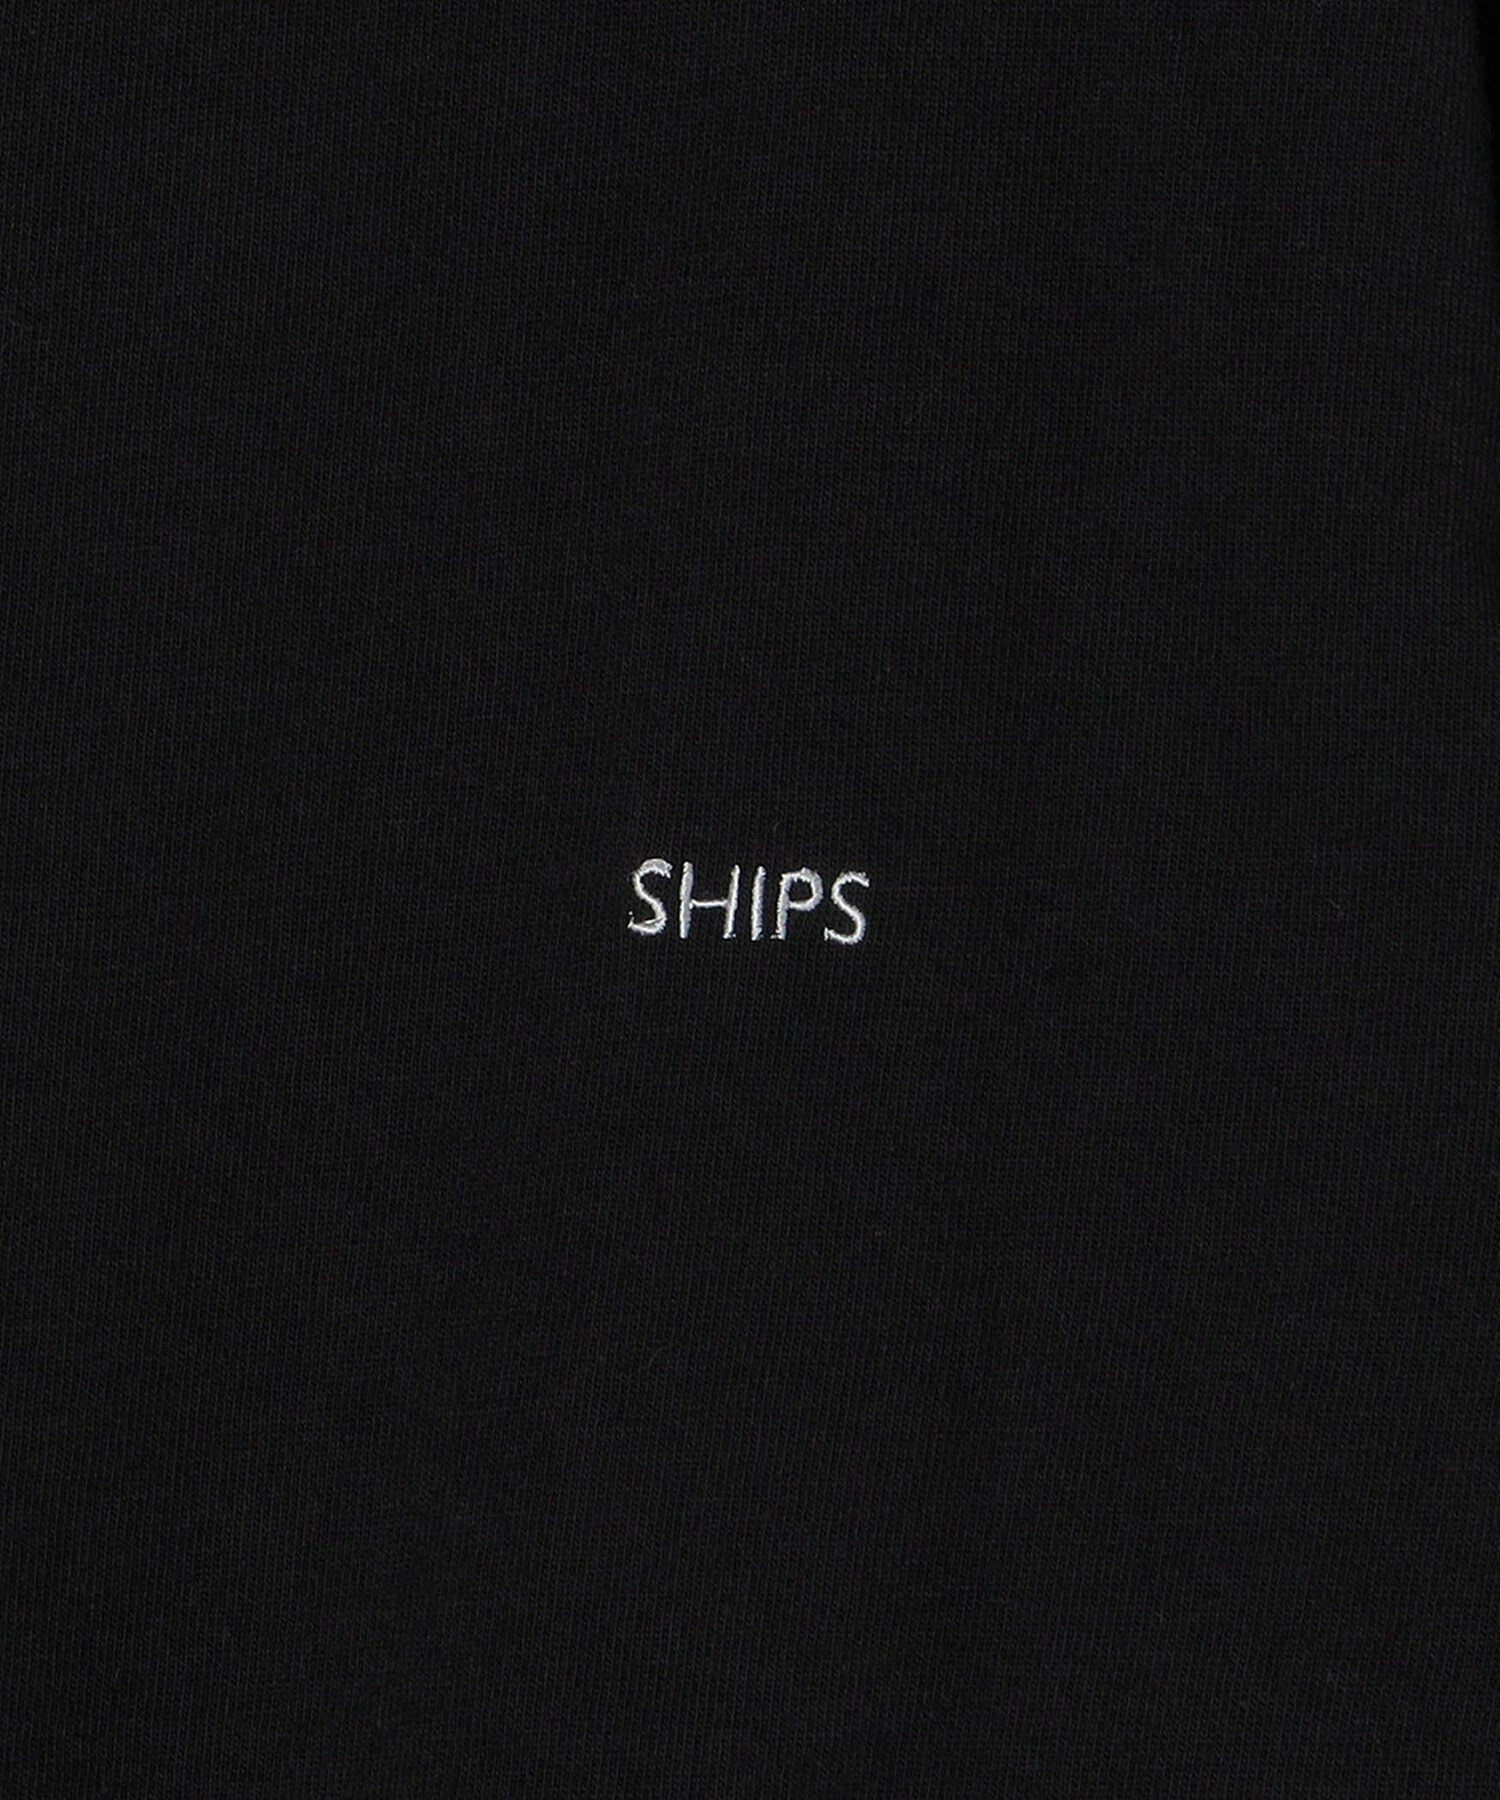 *SHIPS: ワンポイント マイクロ SHIPSロゴ ロングスリーブ Tシャツ (ロンT)